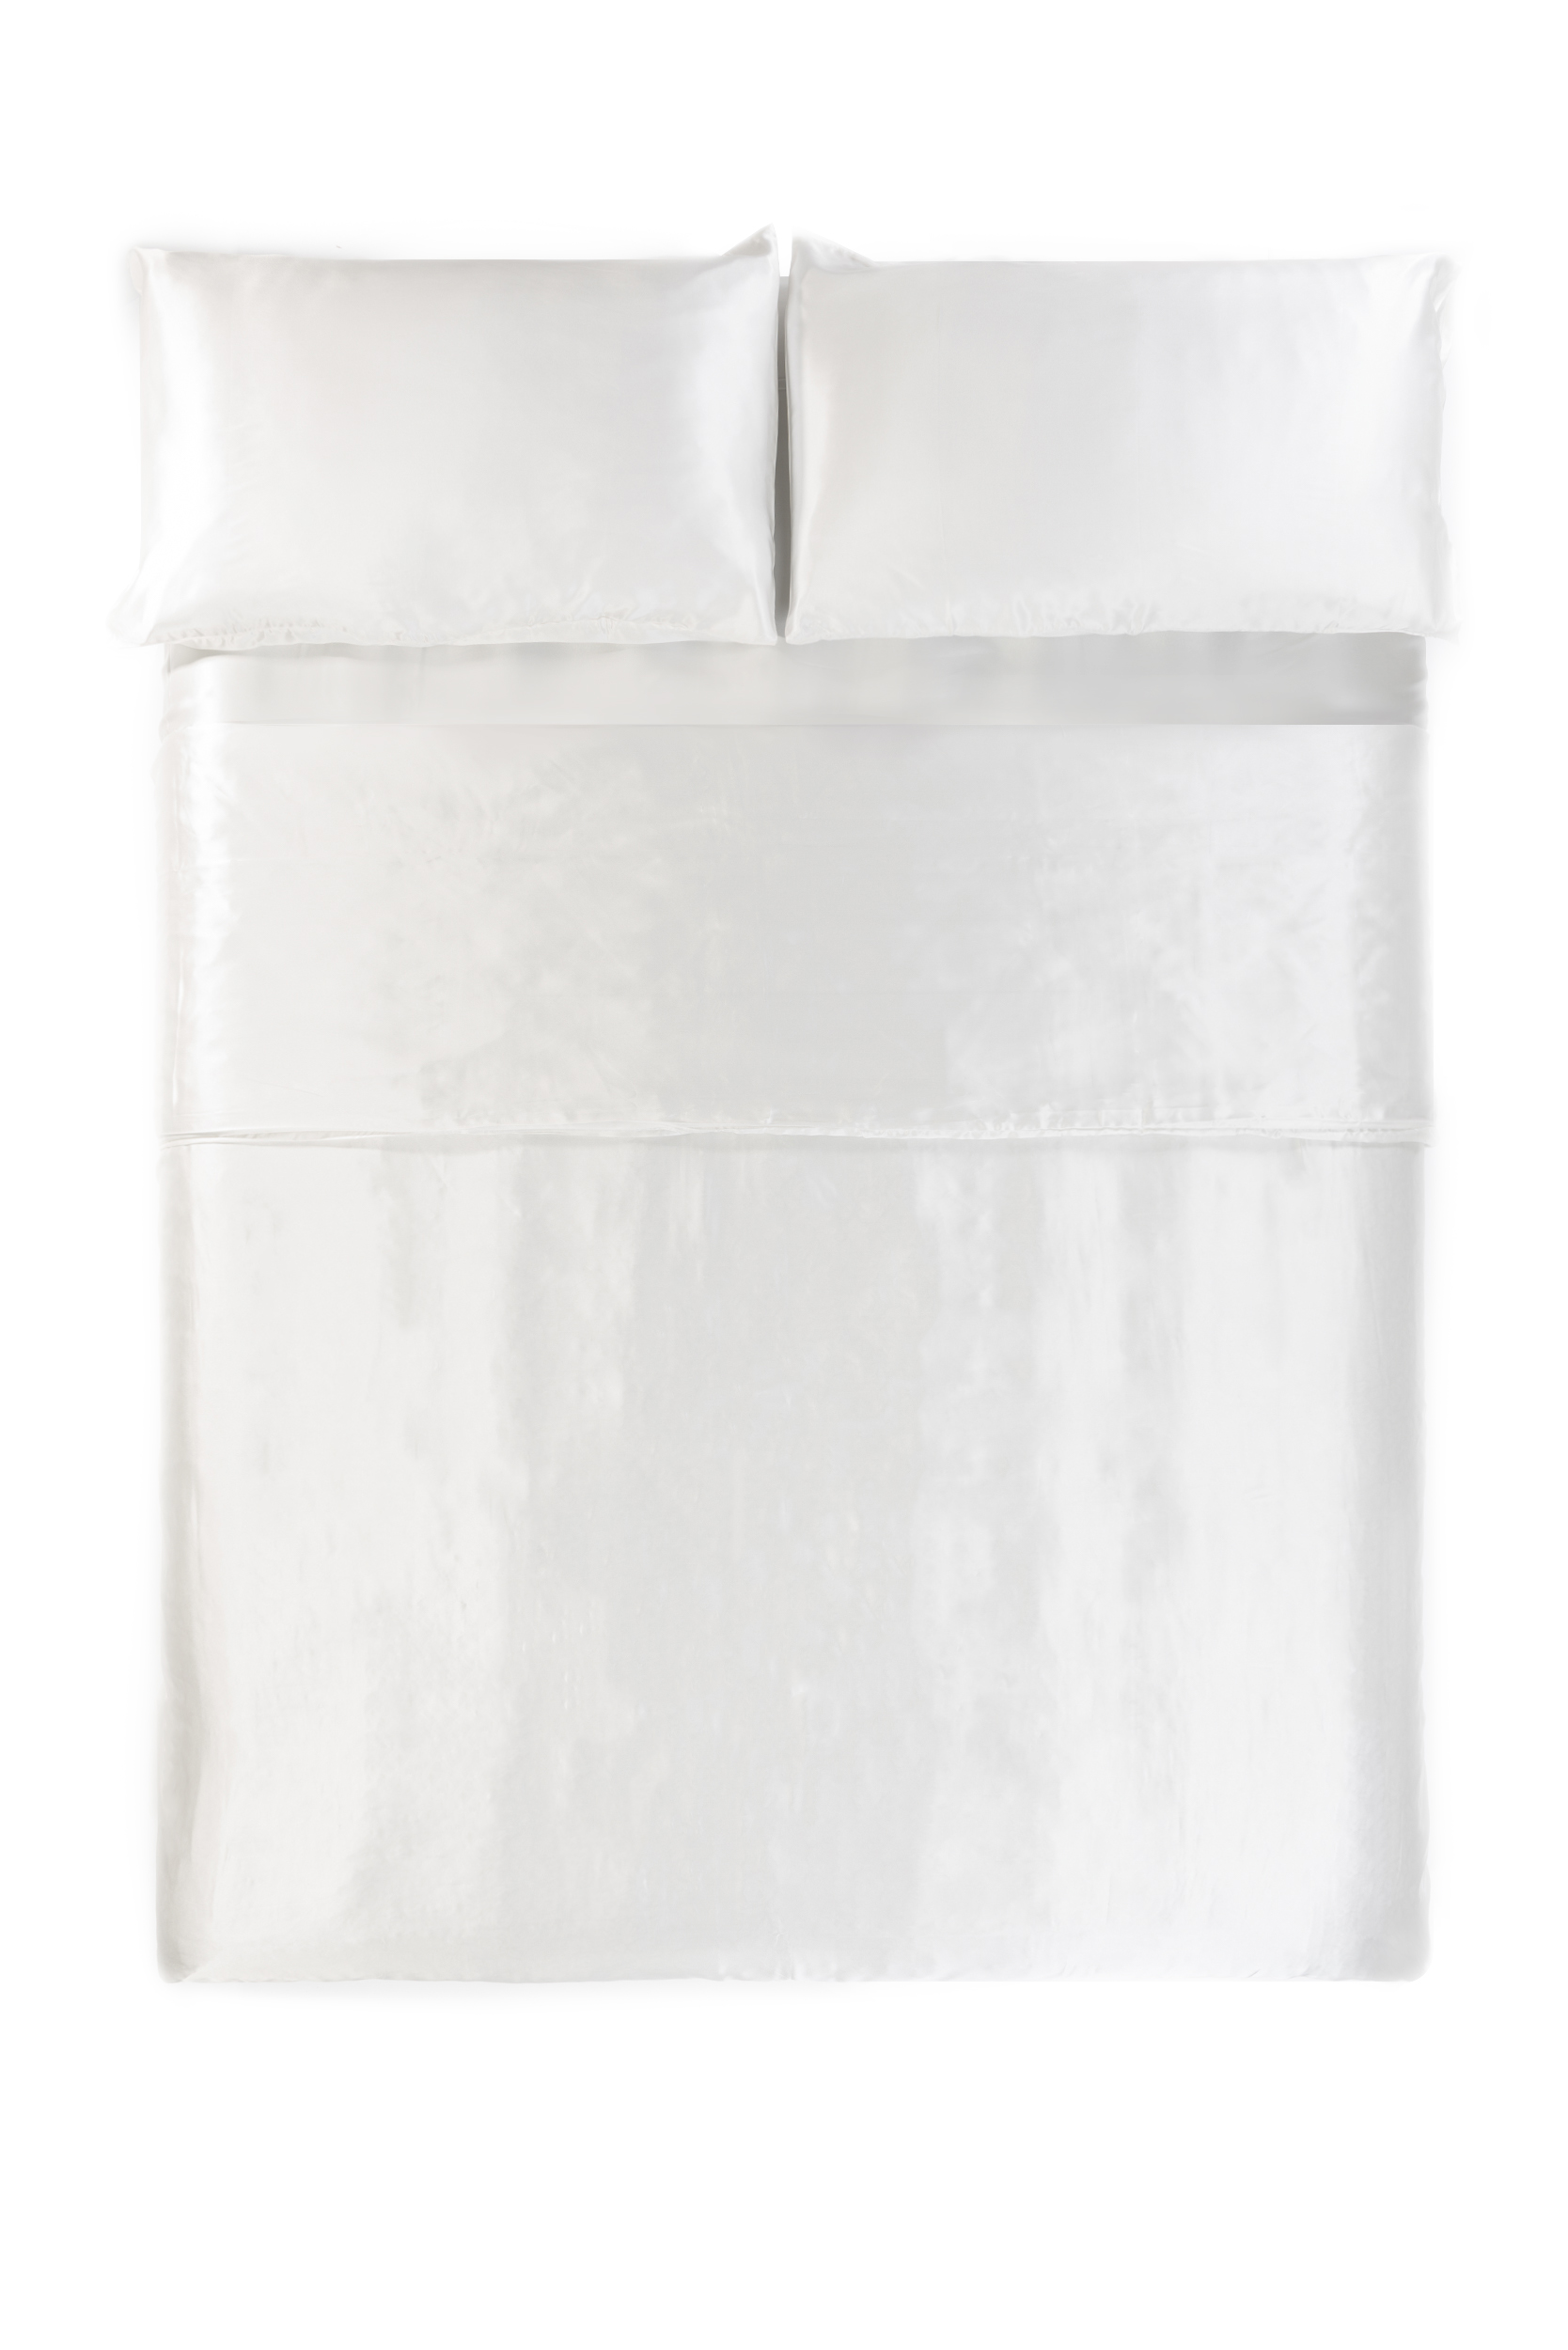 silk white duvet cover